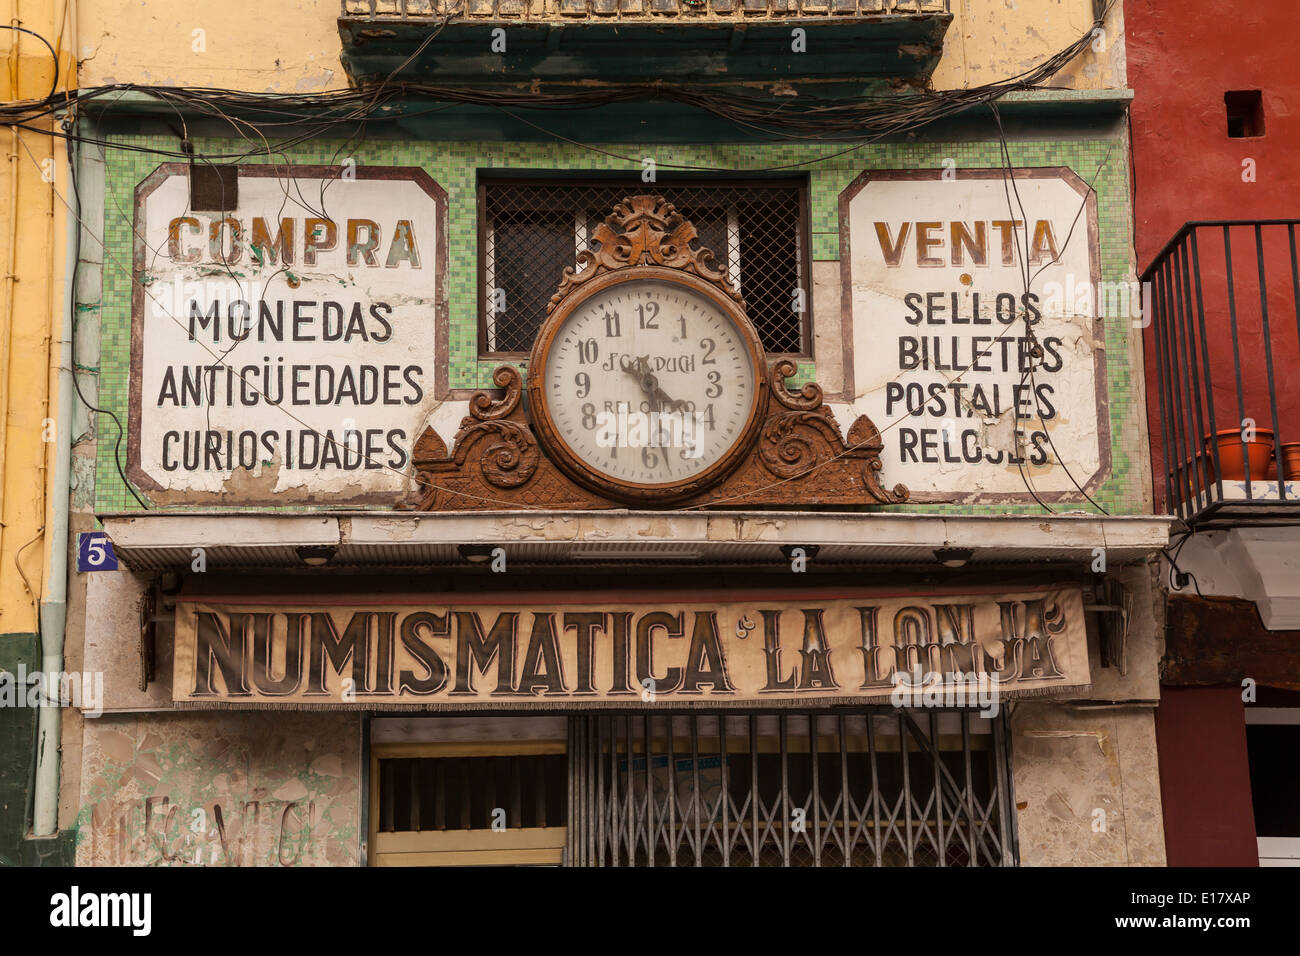 Un viejo relojero de la tienda en la ciudad de Valencia. Foto de stock